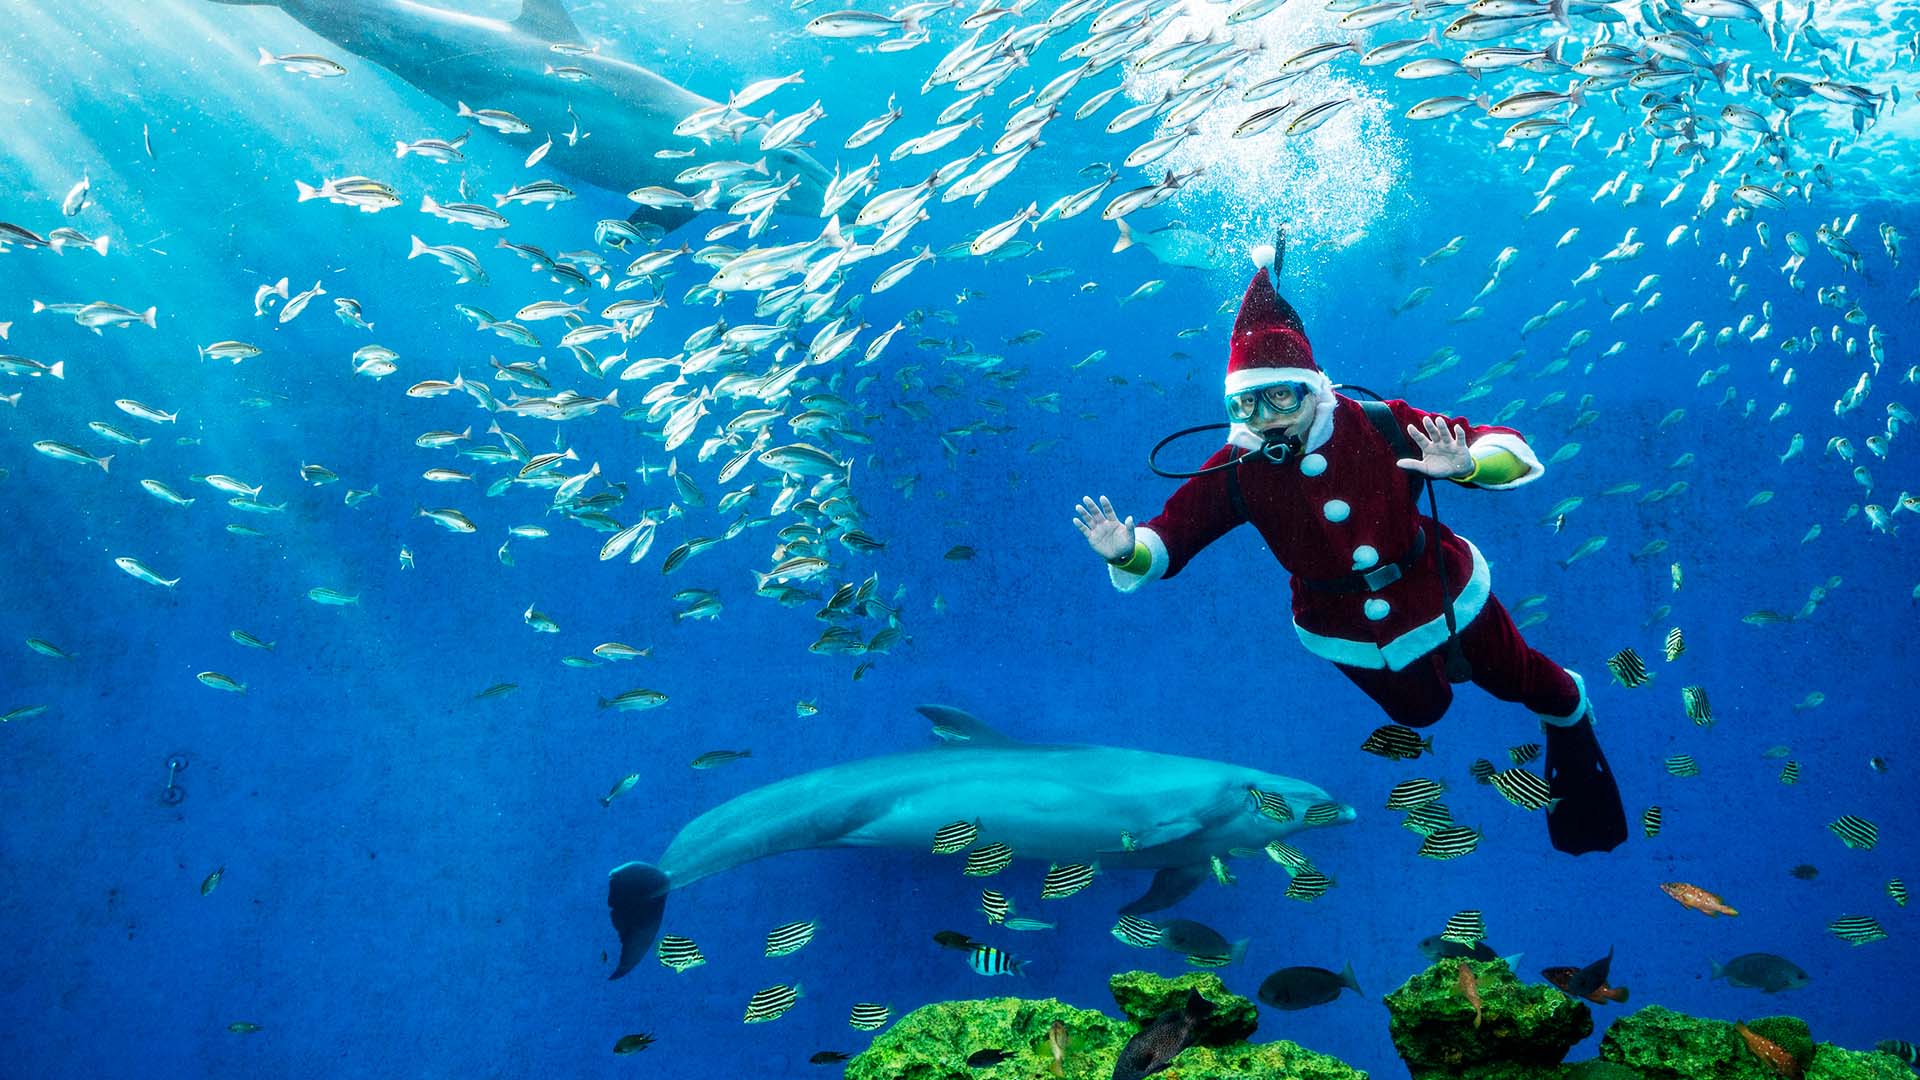 Санта-Клаус поздравил детей в Гватемале и поплавал с акулой на Мальте